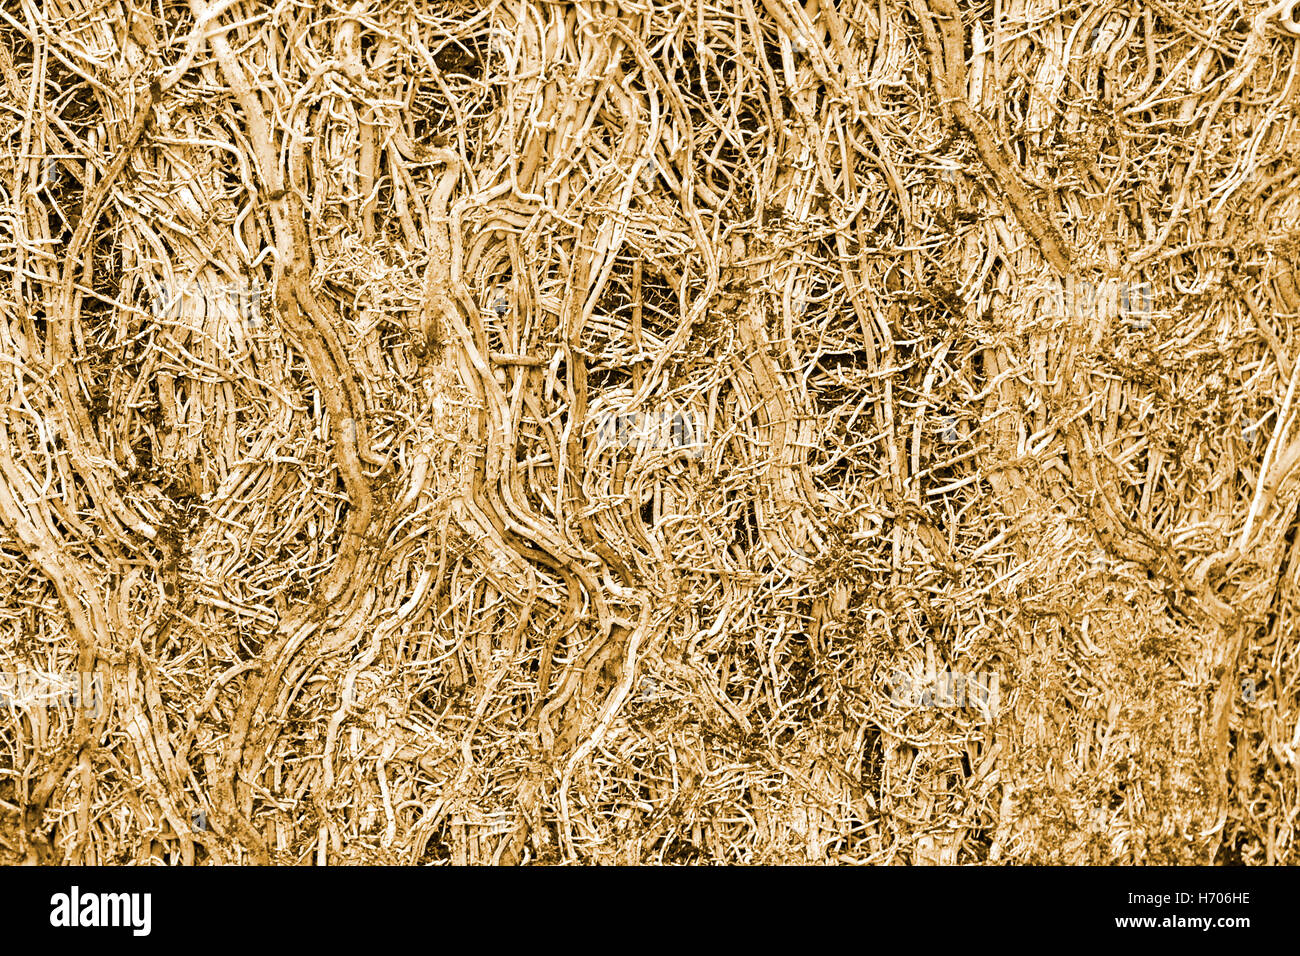 Abstract close up immagine di stretto cluster aggrovigliati di radici di una pentola legato di piante di bambù dopo la rimozione pot concetto idea per collegare percorsi di collegamento Regno Unito Foto Stock